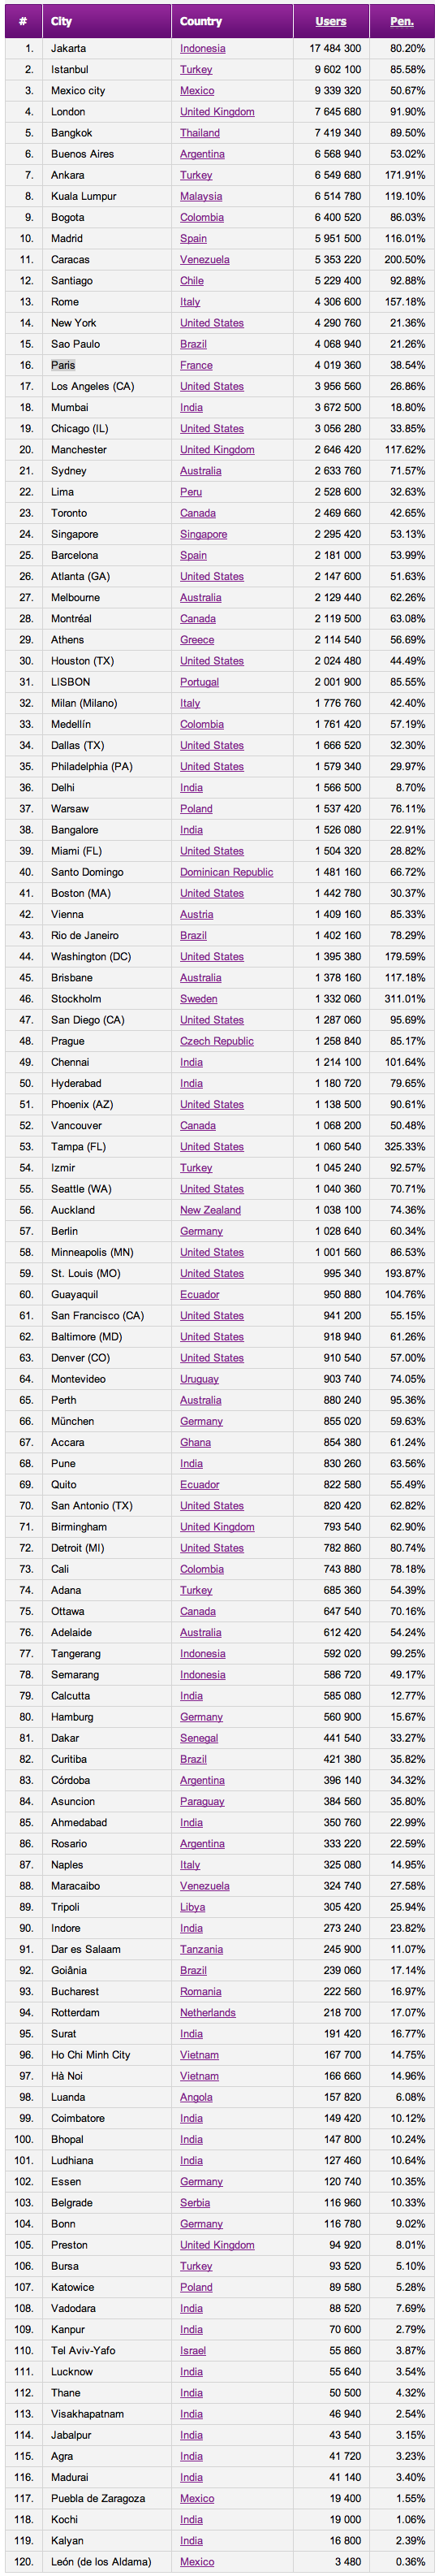 Top 120 des villes les plus représentées sur Facebook